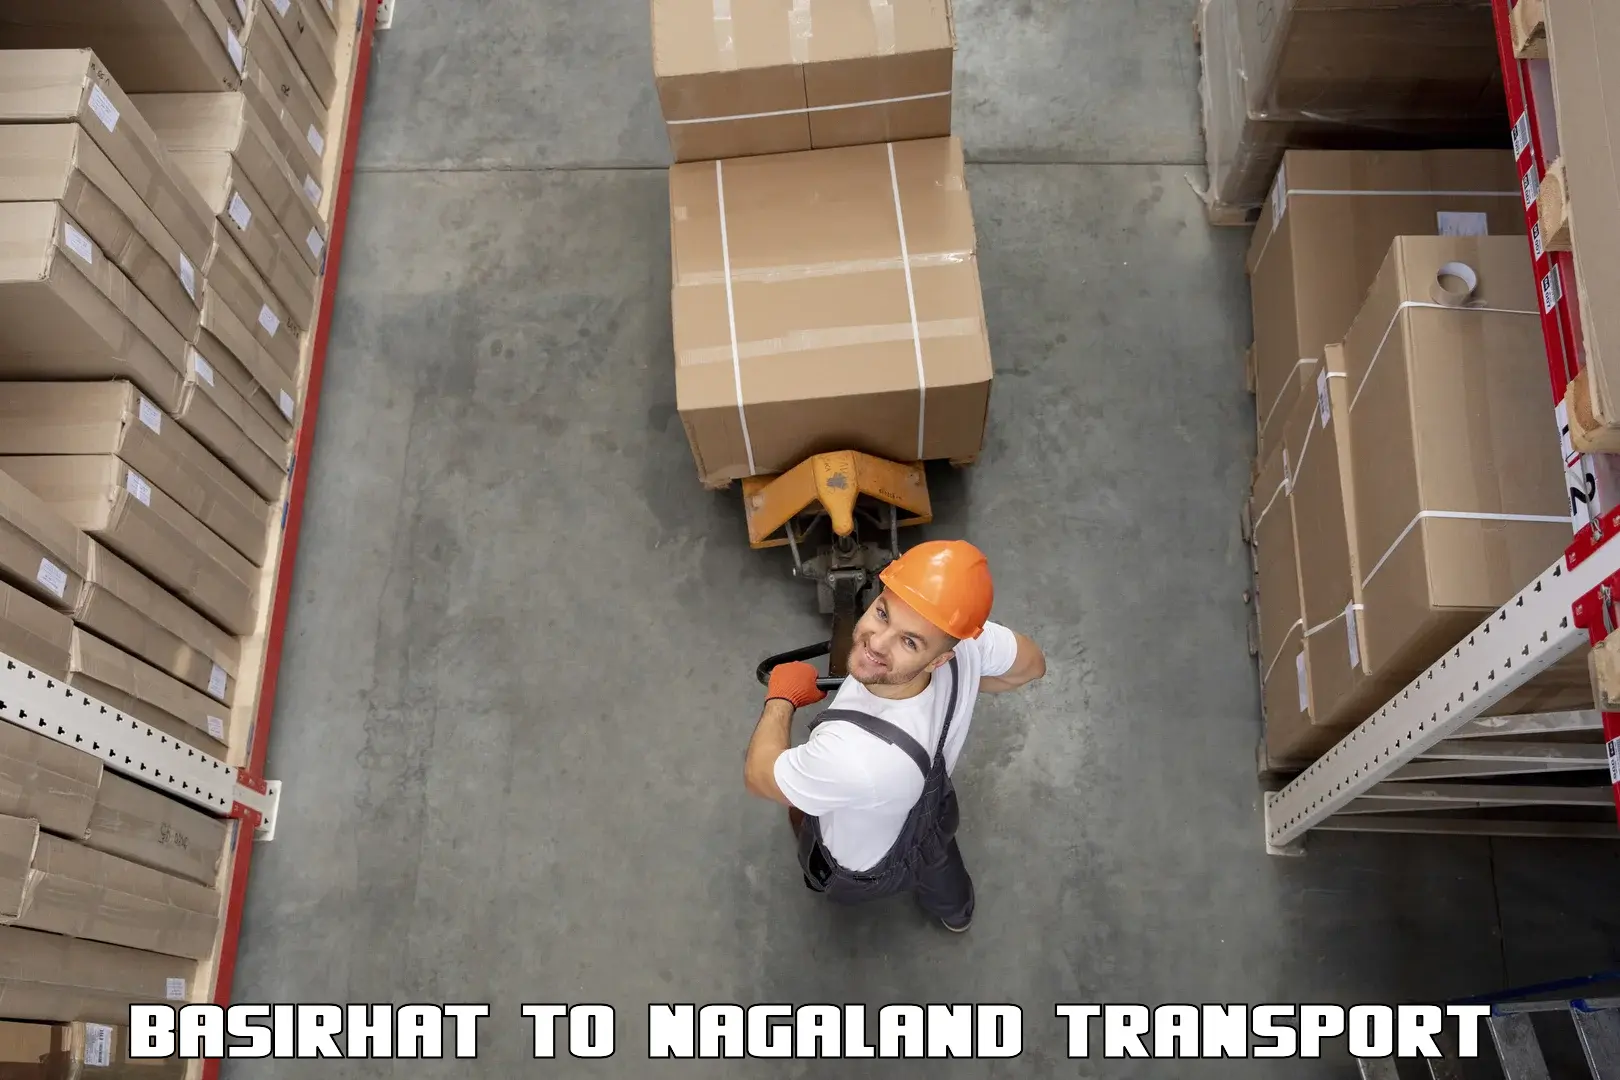 Online transport service Basirhat to Nagaland